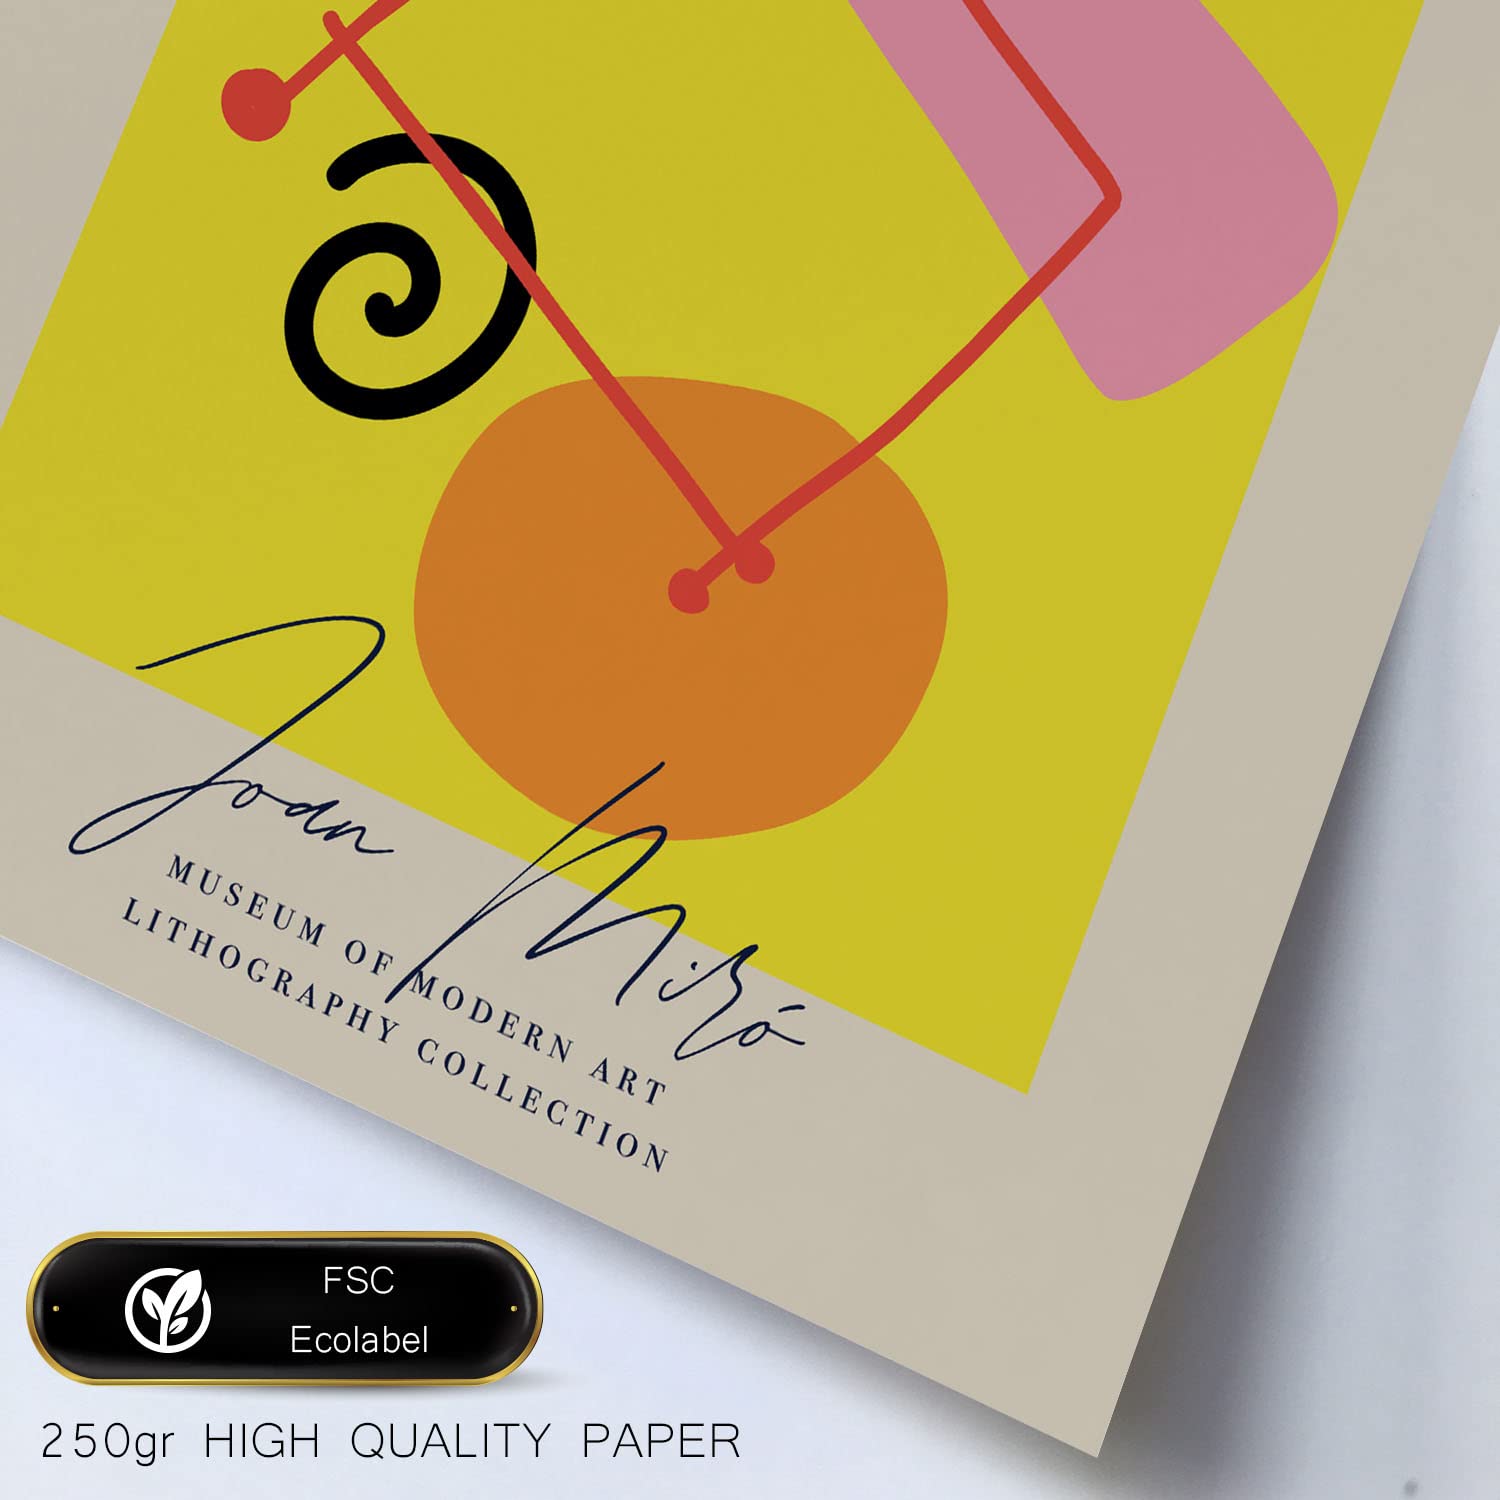 Set de 6 posters de Arte Miró. Colección de láminas con estética collage para la Tamaños A3 y A4. .-Artwork-Nacnic-Nacnic Estudio SL